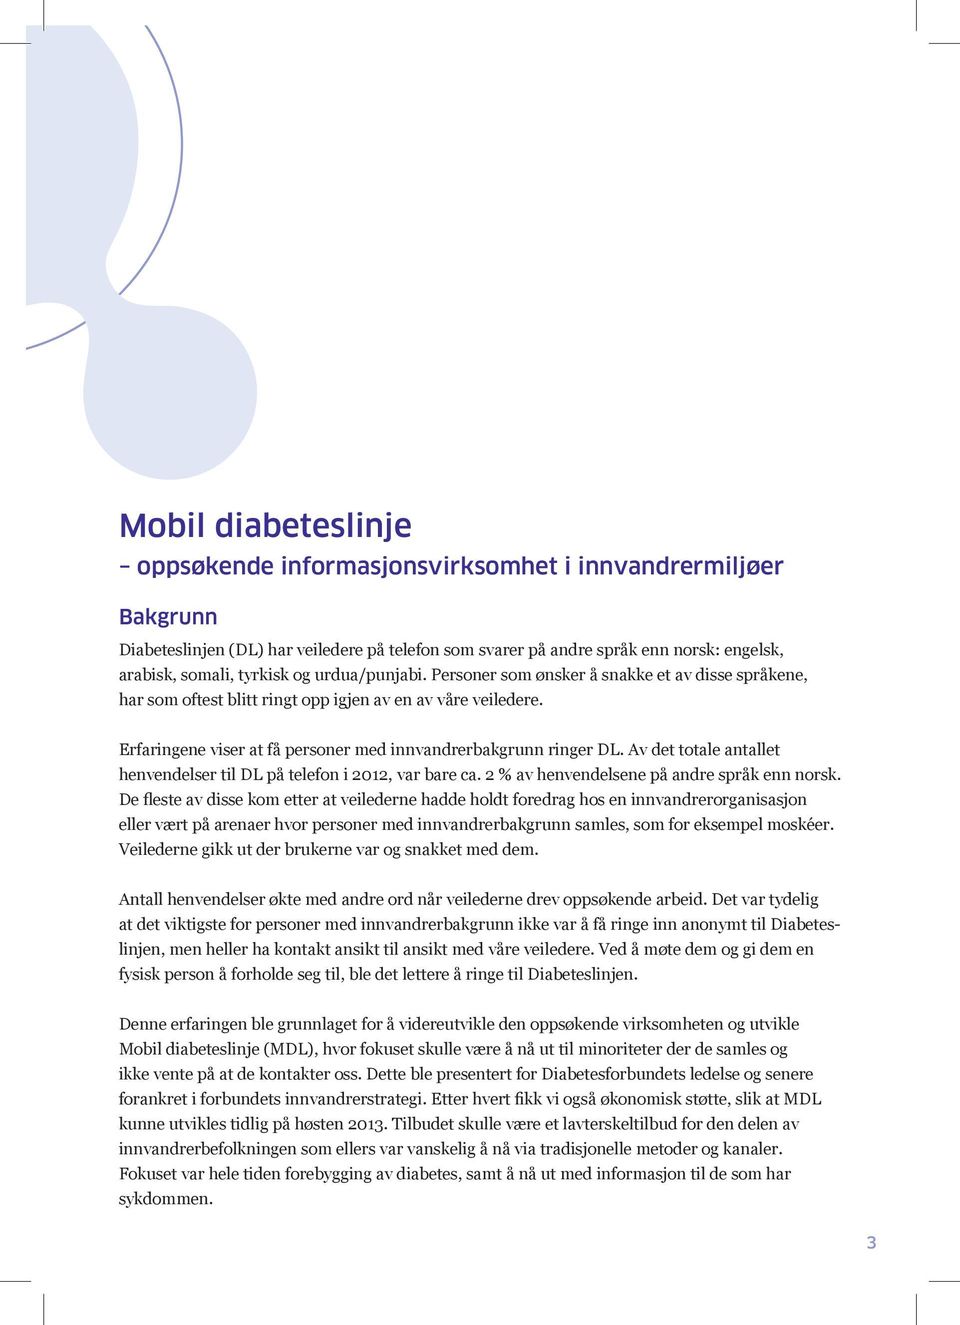 Av det totale antallet henvendelser til DL på telefon i 2012, var bare ca. 2 % av henvendelsene på andre språk enn norsk.